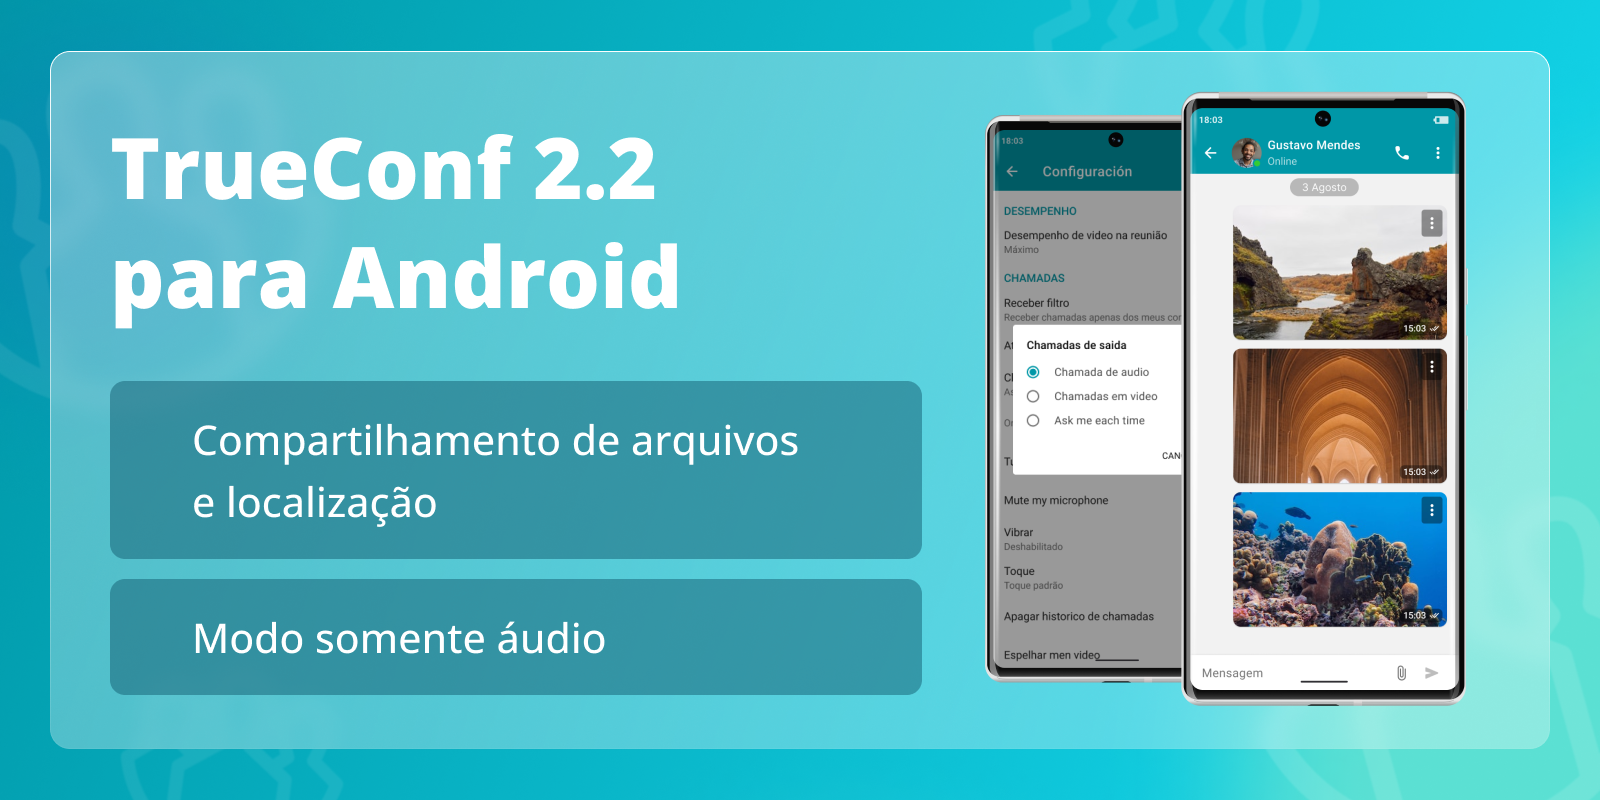 TrueConf 2.2 para Android: modo somente áudio e compartilhamento de arquivos 1